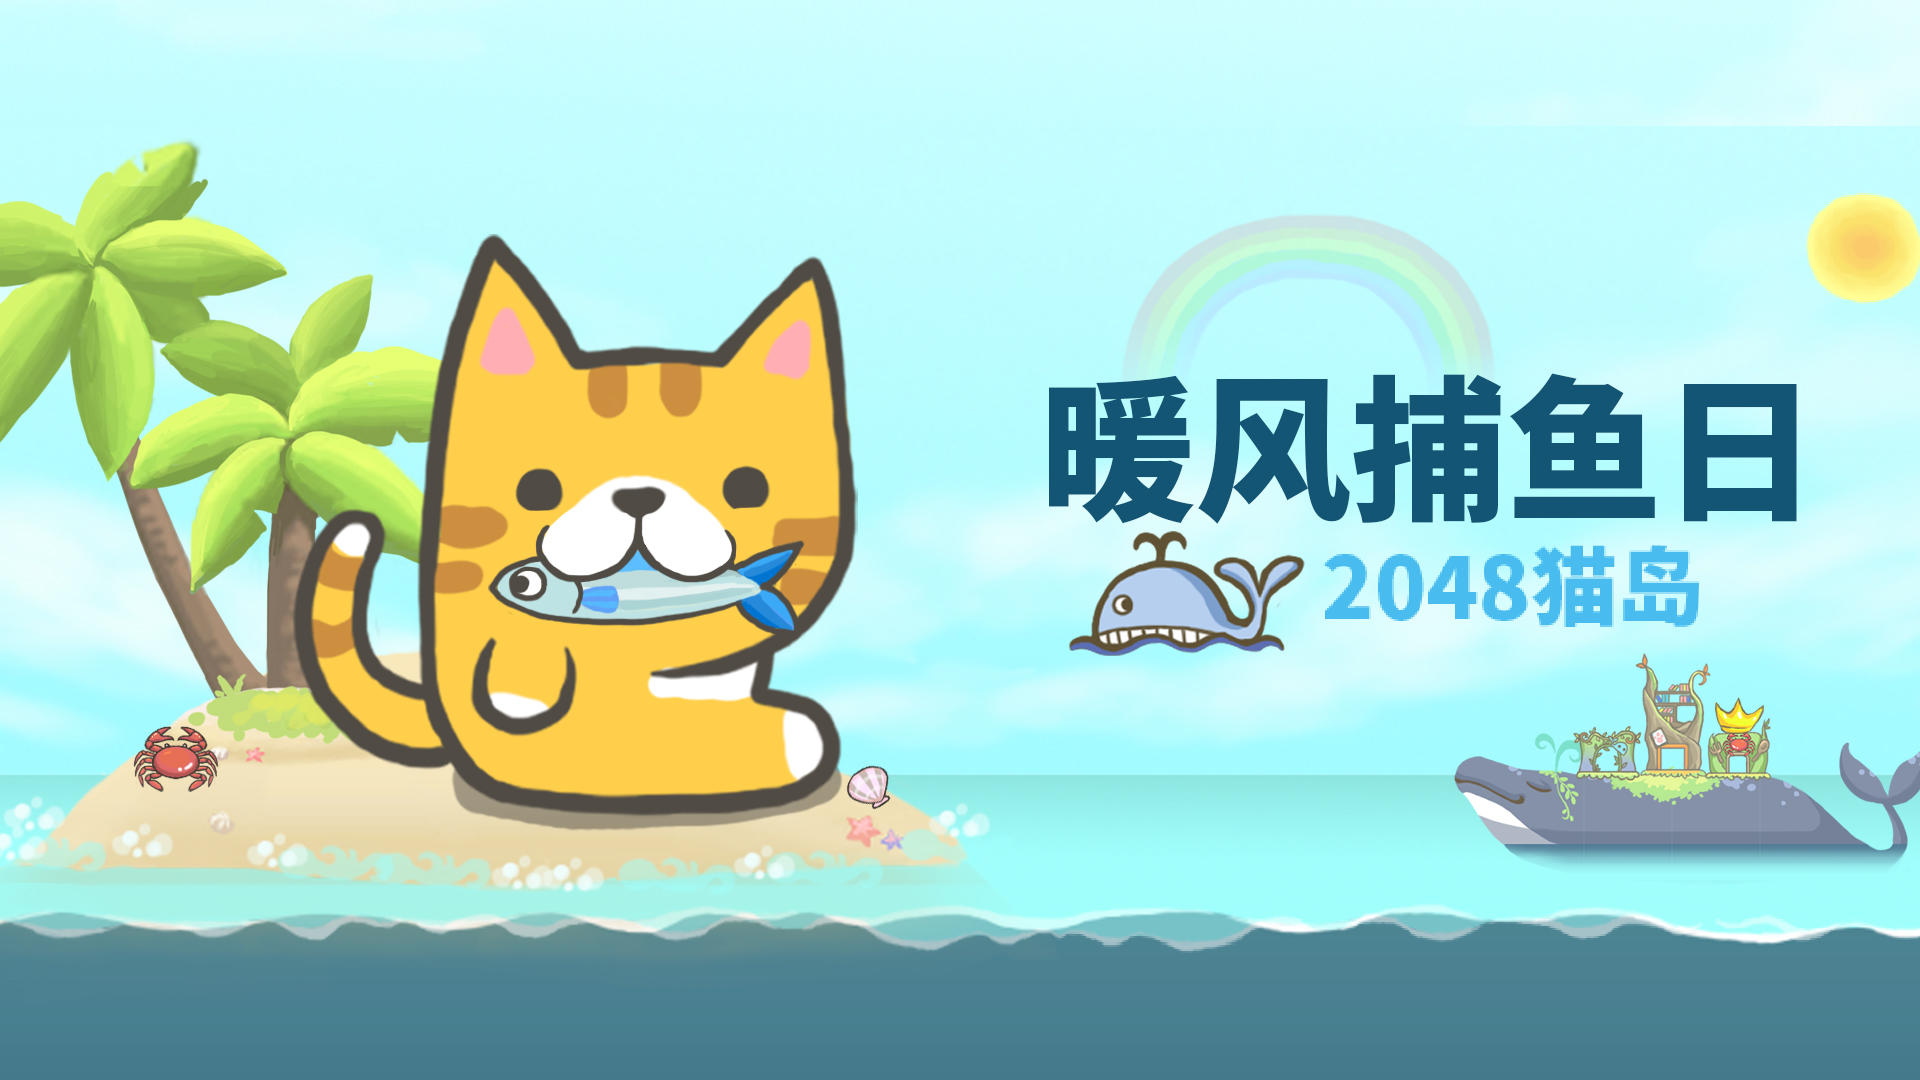 Banner of Dia de Pesca com Vento Quente: 2048 Cat Island 